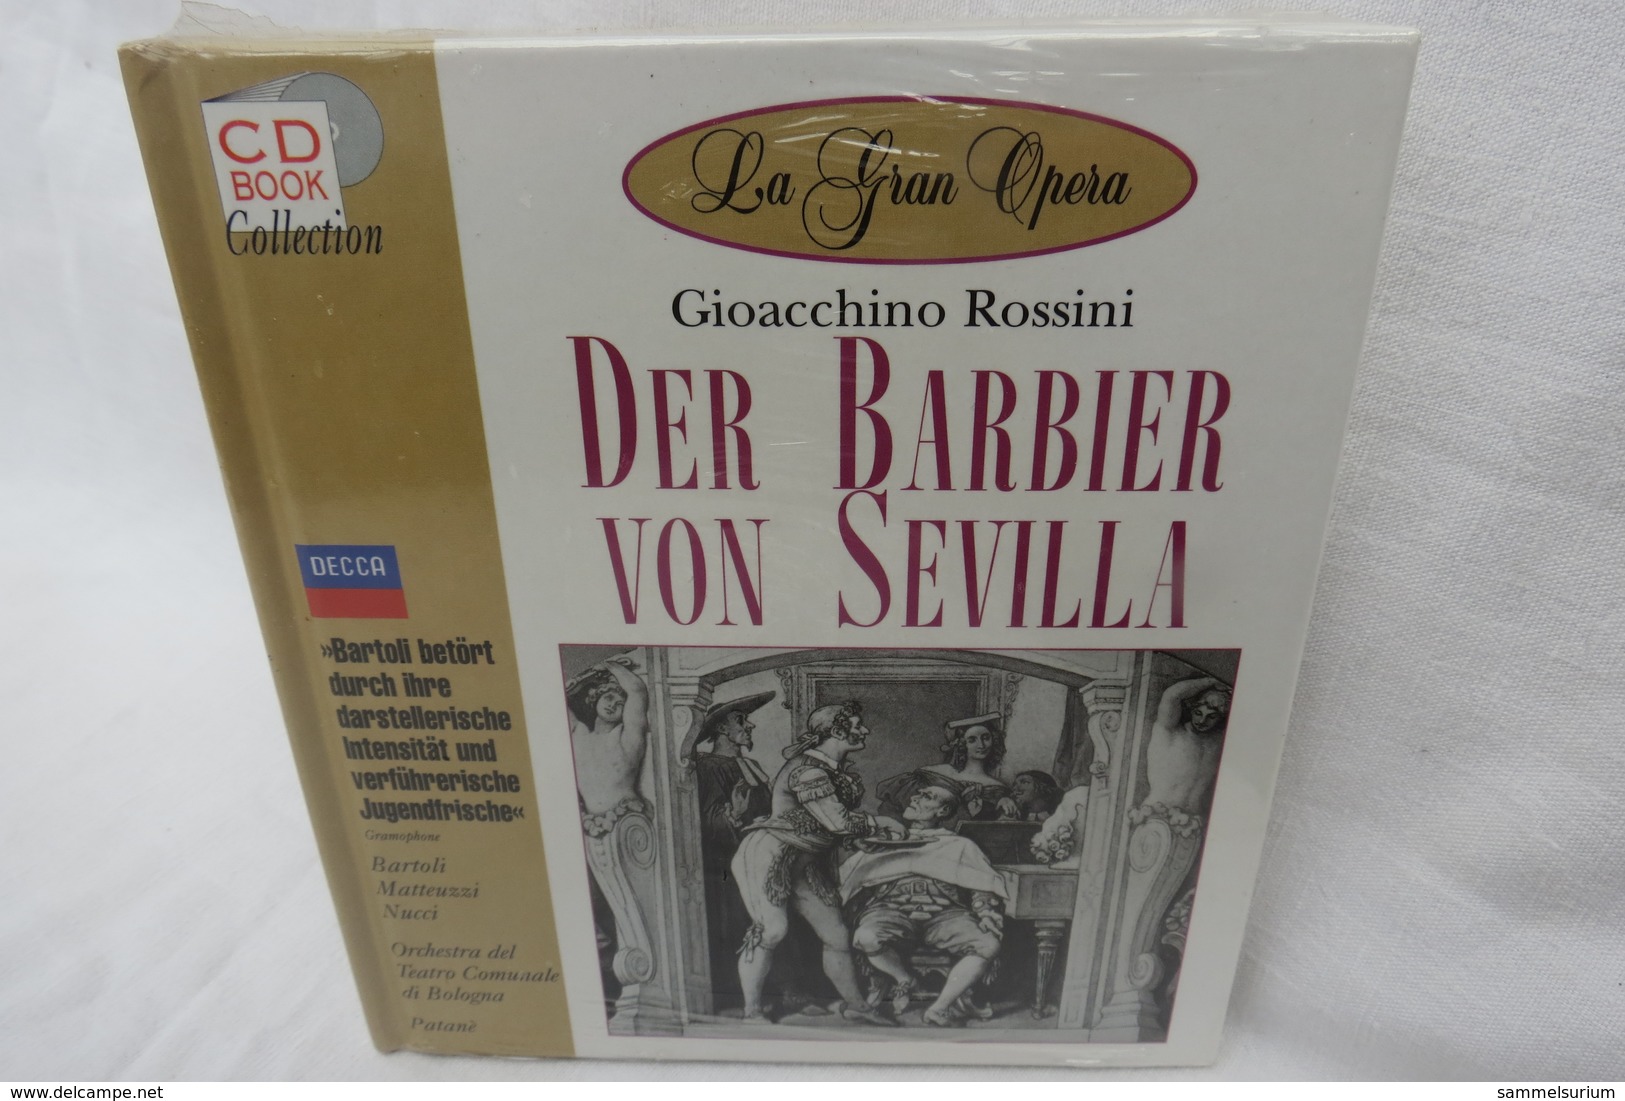 CD "Der Barbier Von Sevilla/Gioacchino Rossini" Mit Buch Aus Der CD Book Collection (ungeöffnet, Original Eingeschweißt) - Opera